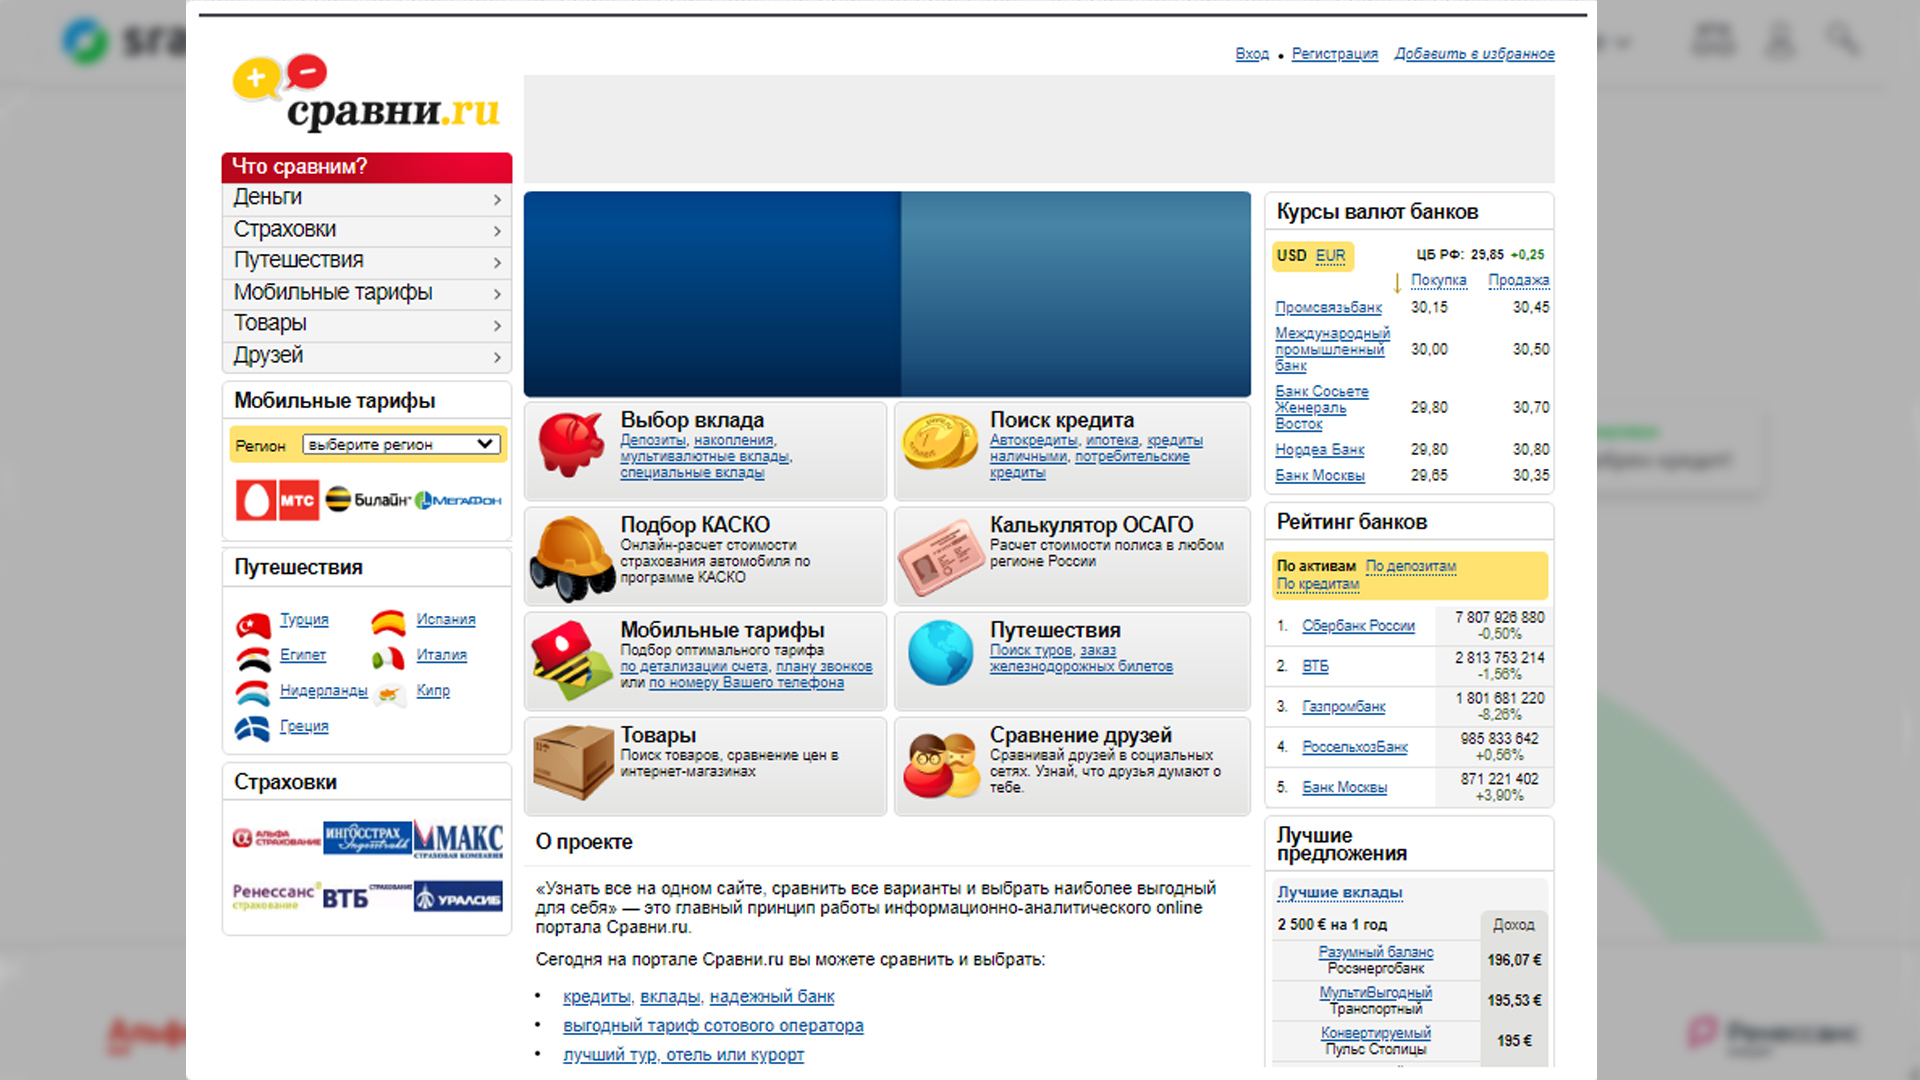 Дизайн сайта sravni.ru  в начале своей работы.